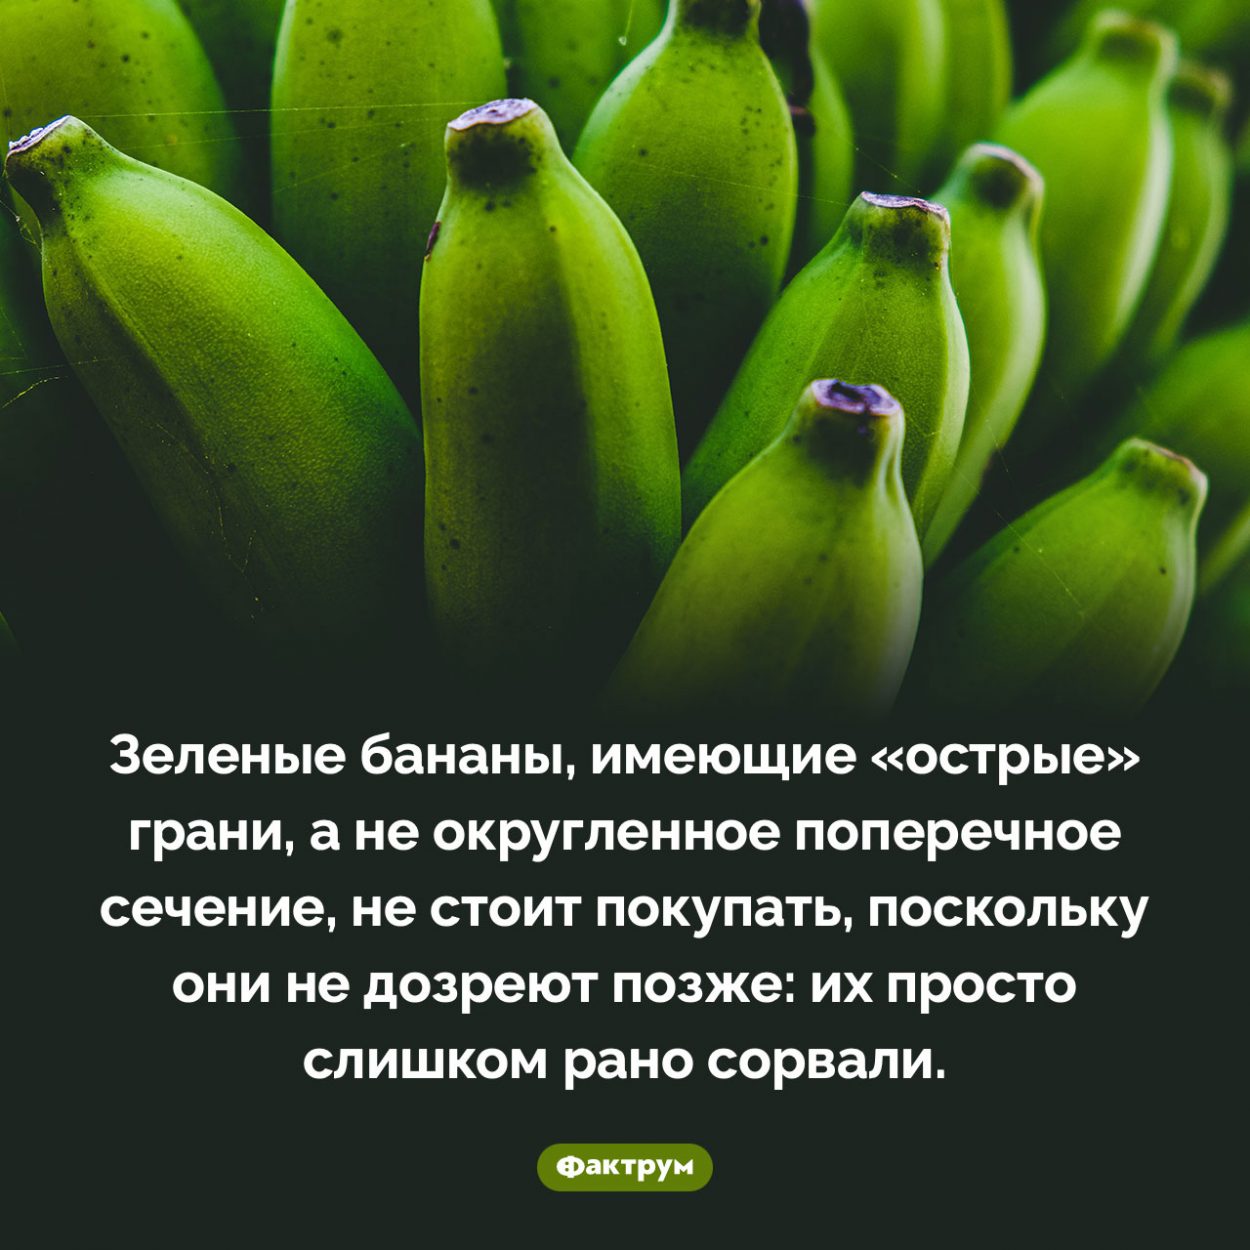 Какие бананы не стоит покупать. Зеленые бананы, имеющие «острые» грани, а не округленное поперечное сечение, не стоит покупать, поскольку они не дозреют позже: их просто слишком рано сорвали.